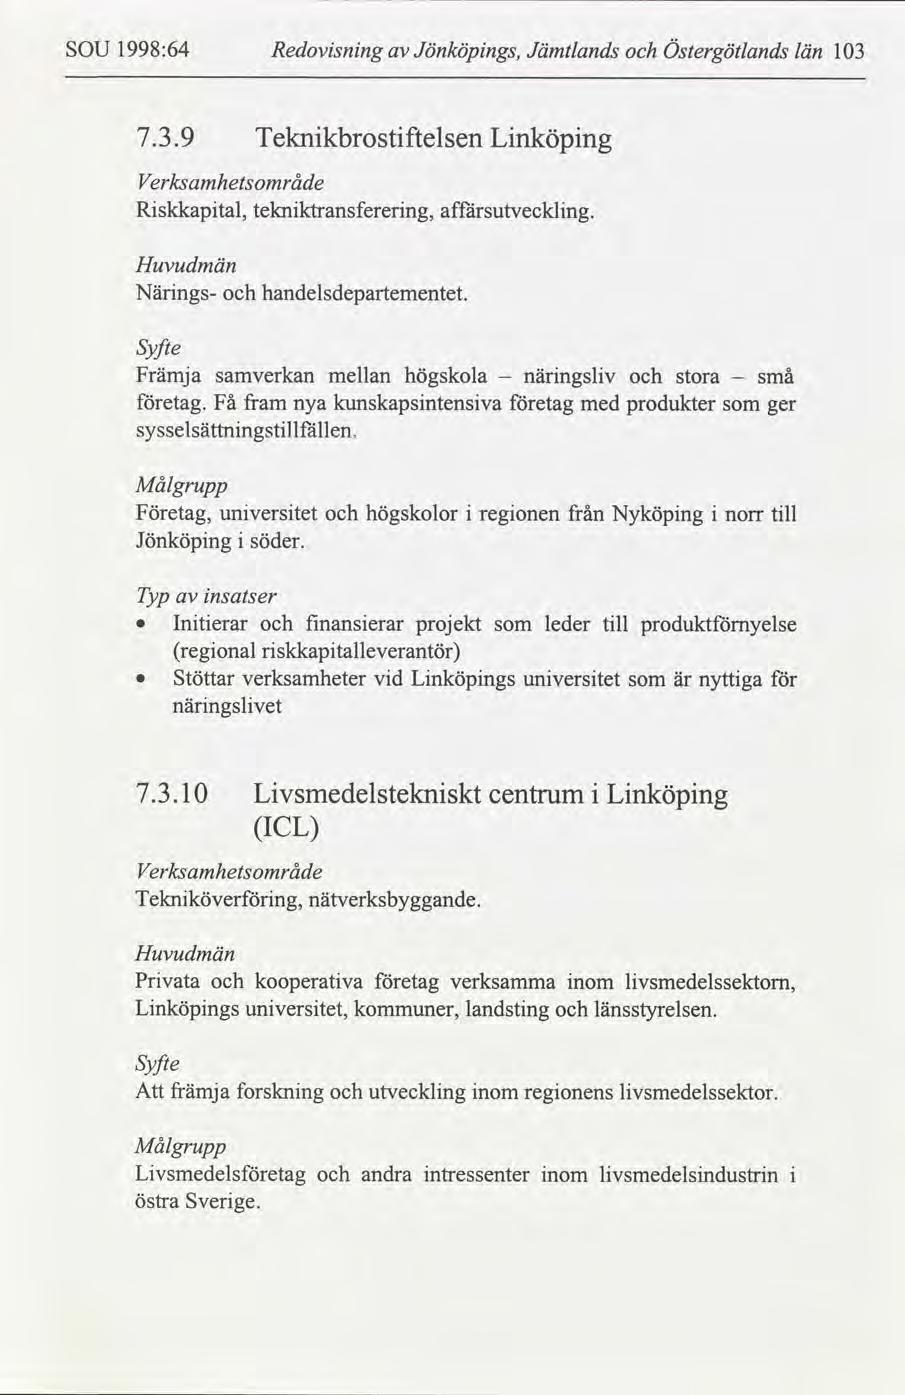 SOU 1998:64 Redovsnng Jönköpngs, Jämtlands Östergötlands län 13 7.3.9 Teknkbrostftelsen Lnköpng Verksamhetråde Rskkaptal, teknktransfererng, affärsutvecklng. Huvudmän Närngs- handelsdepartementet.